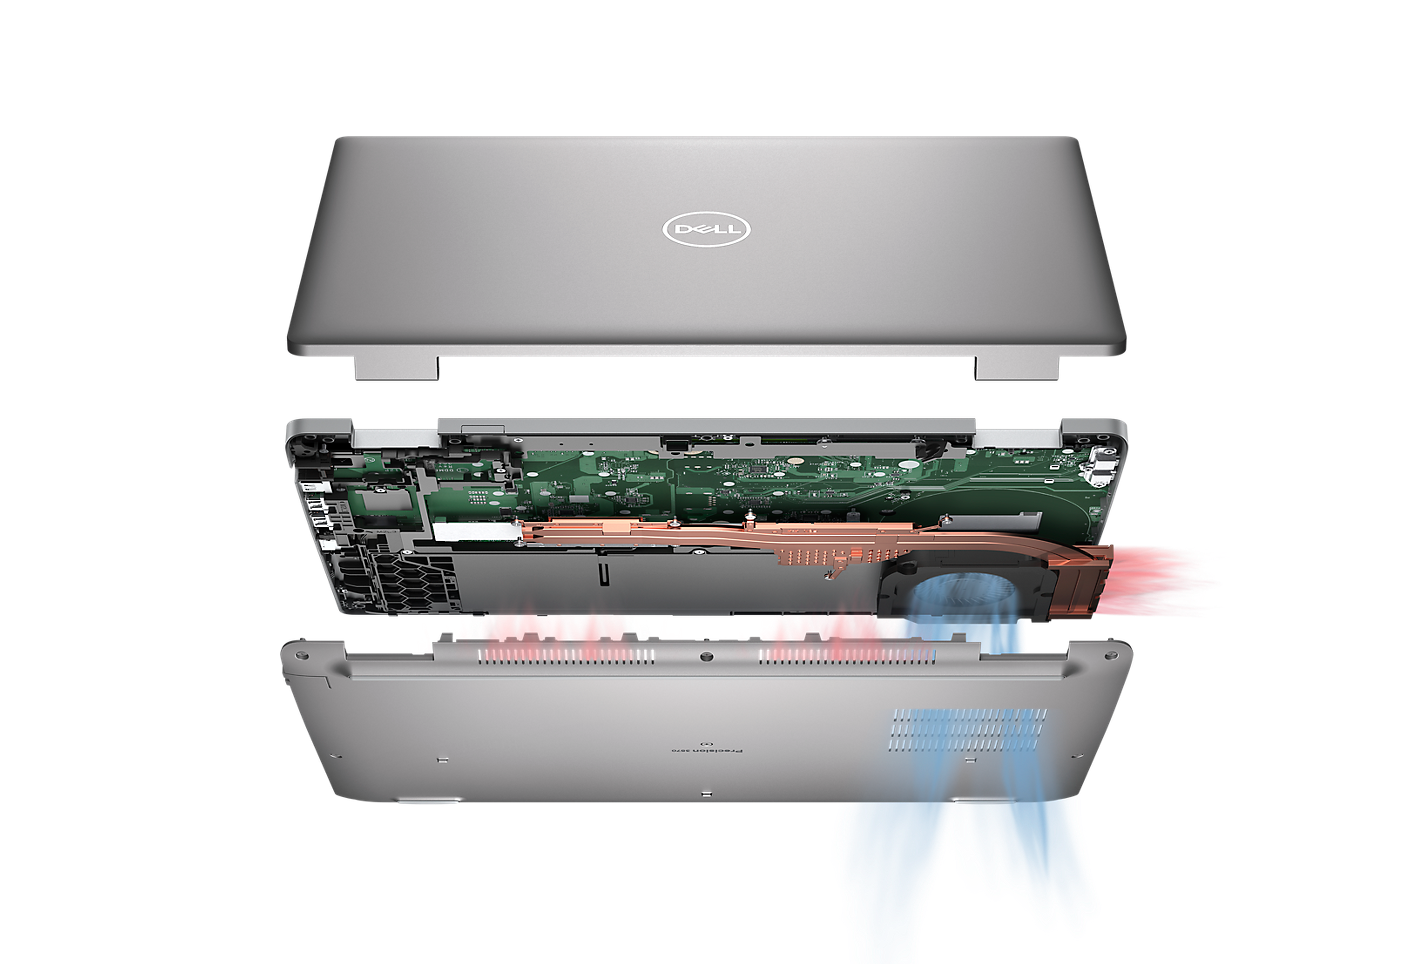 Notebook Dell Precision 3570 má oproti predchádzajúcej generácii podstatne väčší ventilátor s duálnym protiľahlým výstupom (DOO) a 2 tepelné trubice, ktoré spoľahlivo odvádzajú teplo od vnútorných komponentov.